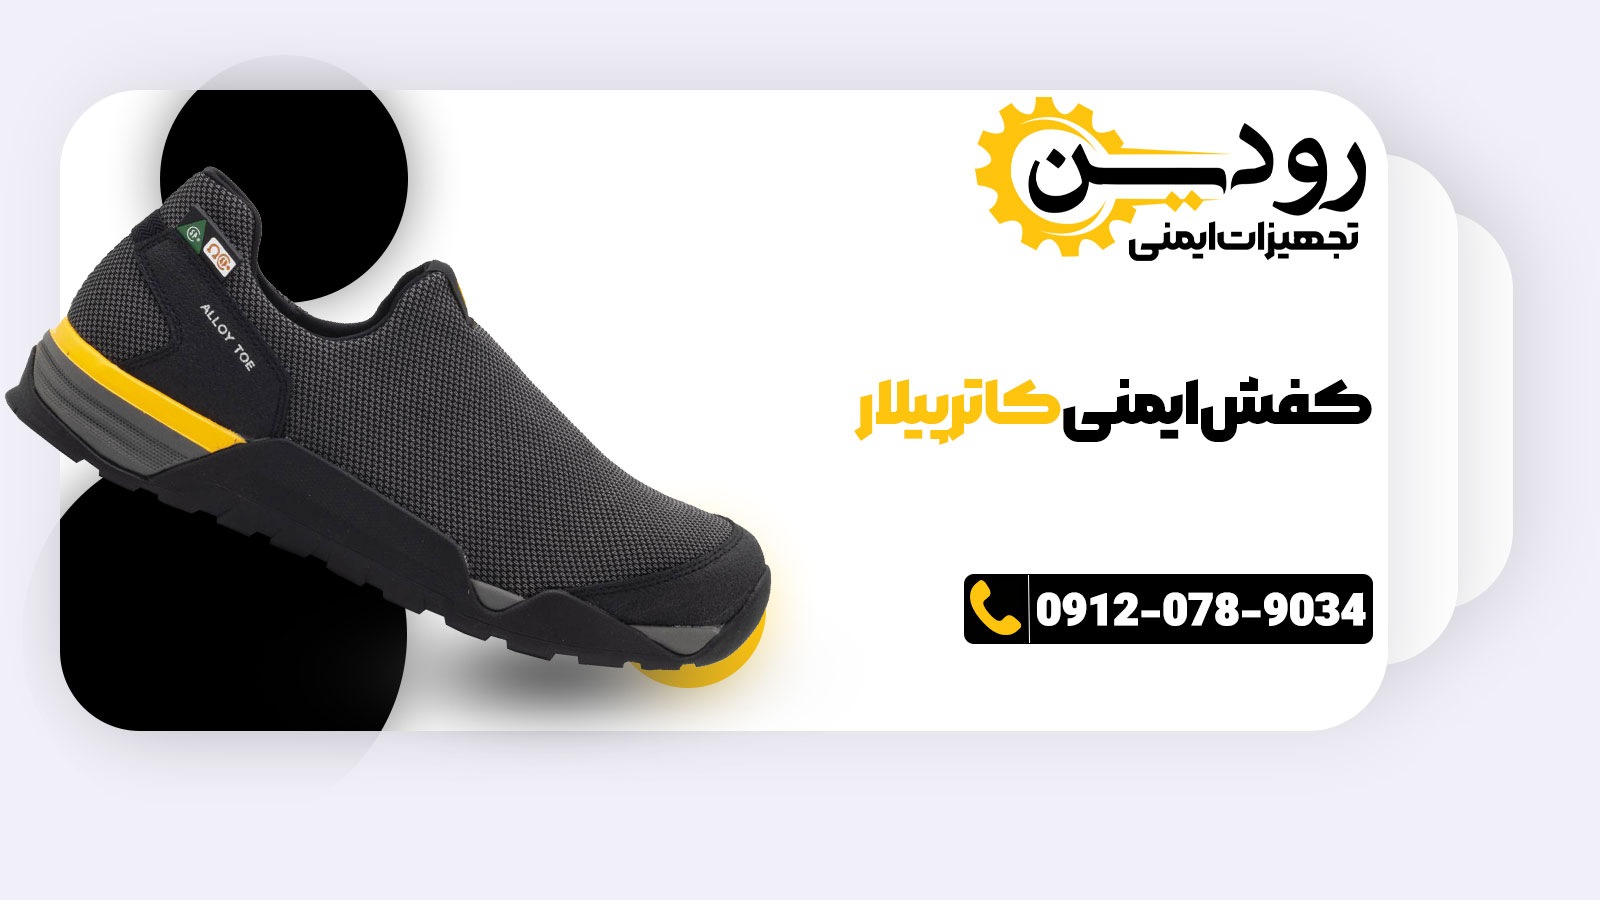 خرید اینترنتی را نمایندگی فروش کفش ایمنی کاترپیلار در ایران فعالسازی کرده.